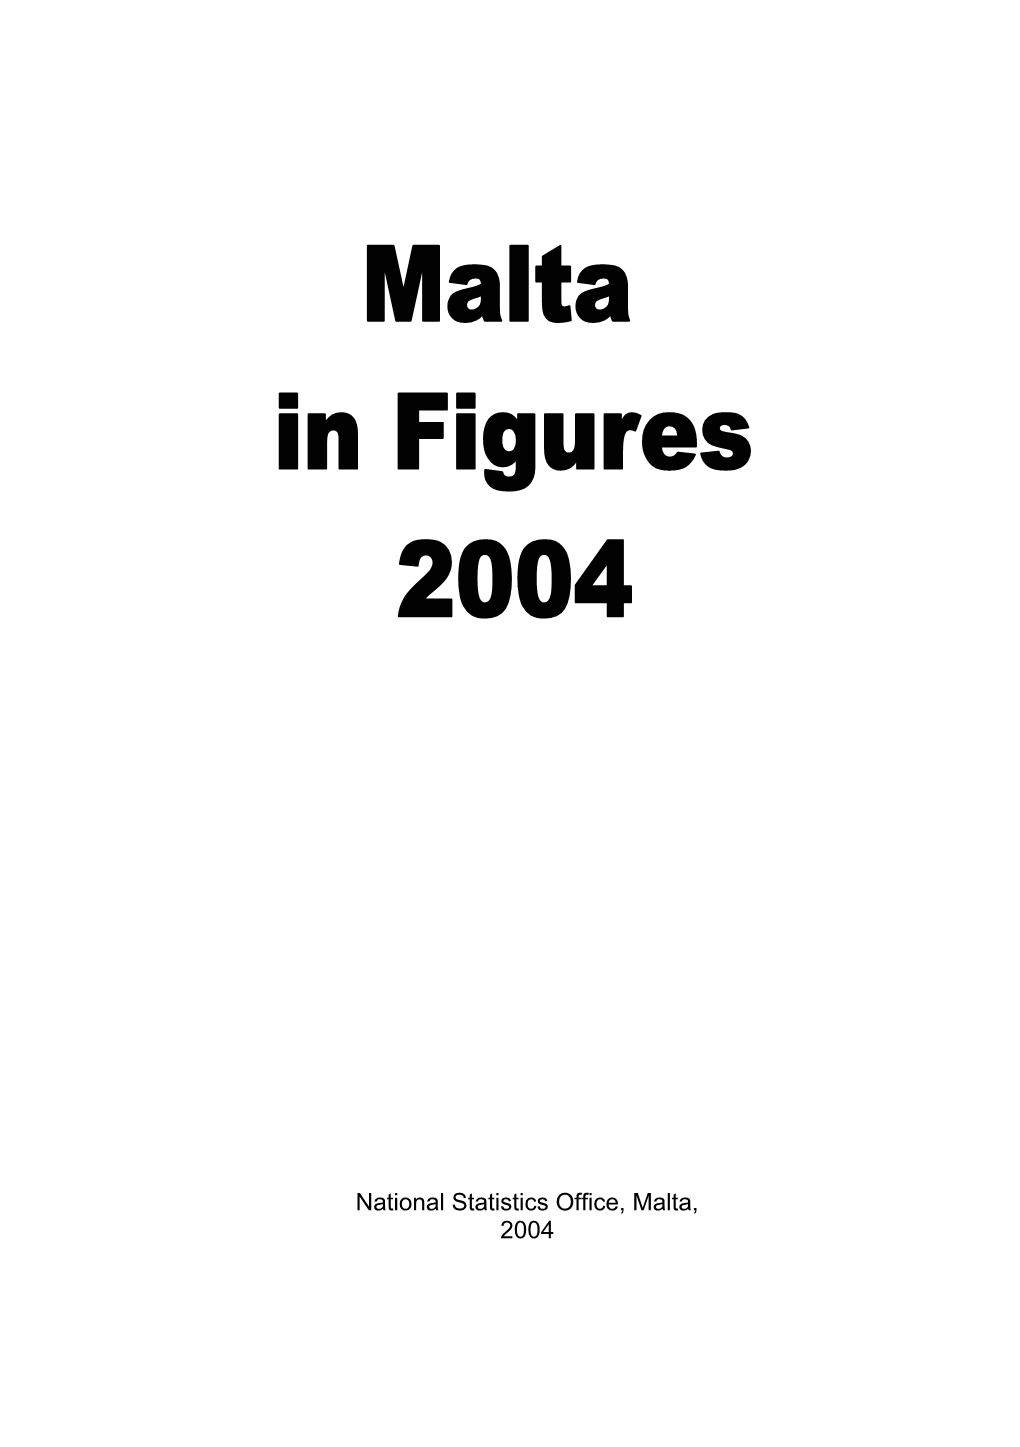 Malta in Figures: 2004